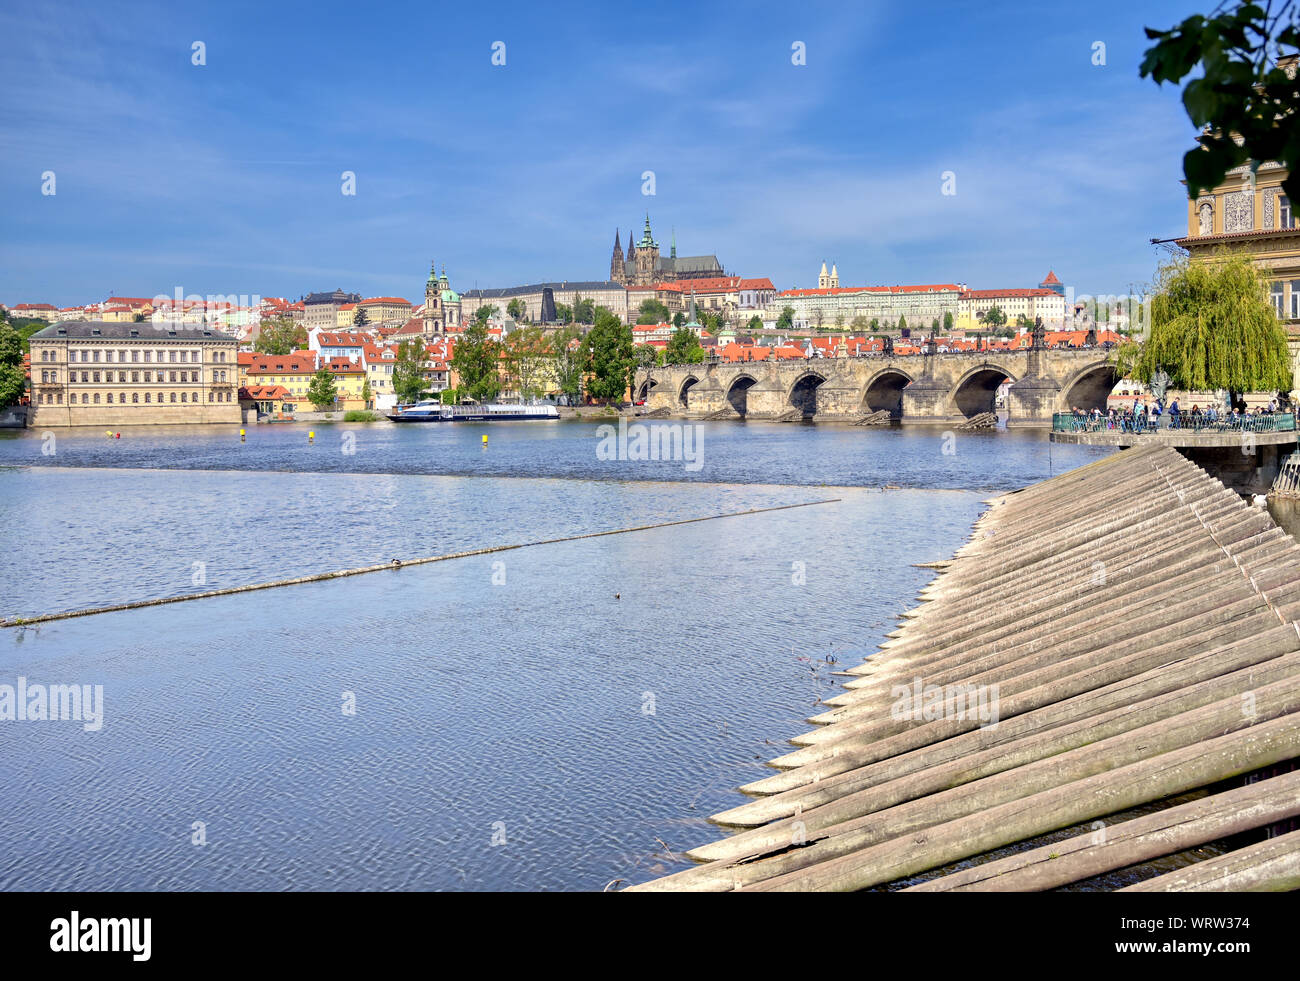 Ein Blick auf die Karlsbrücke und den Fluss Moldau zur Prager Burg und St. Vitas Kathedrale in Prag, Tschechische Republik. Stockfoto